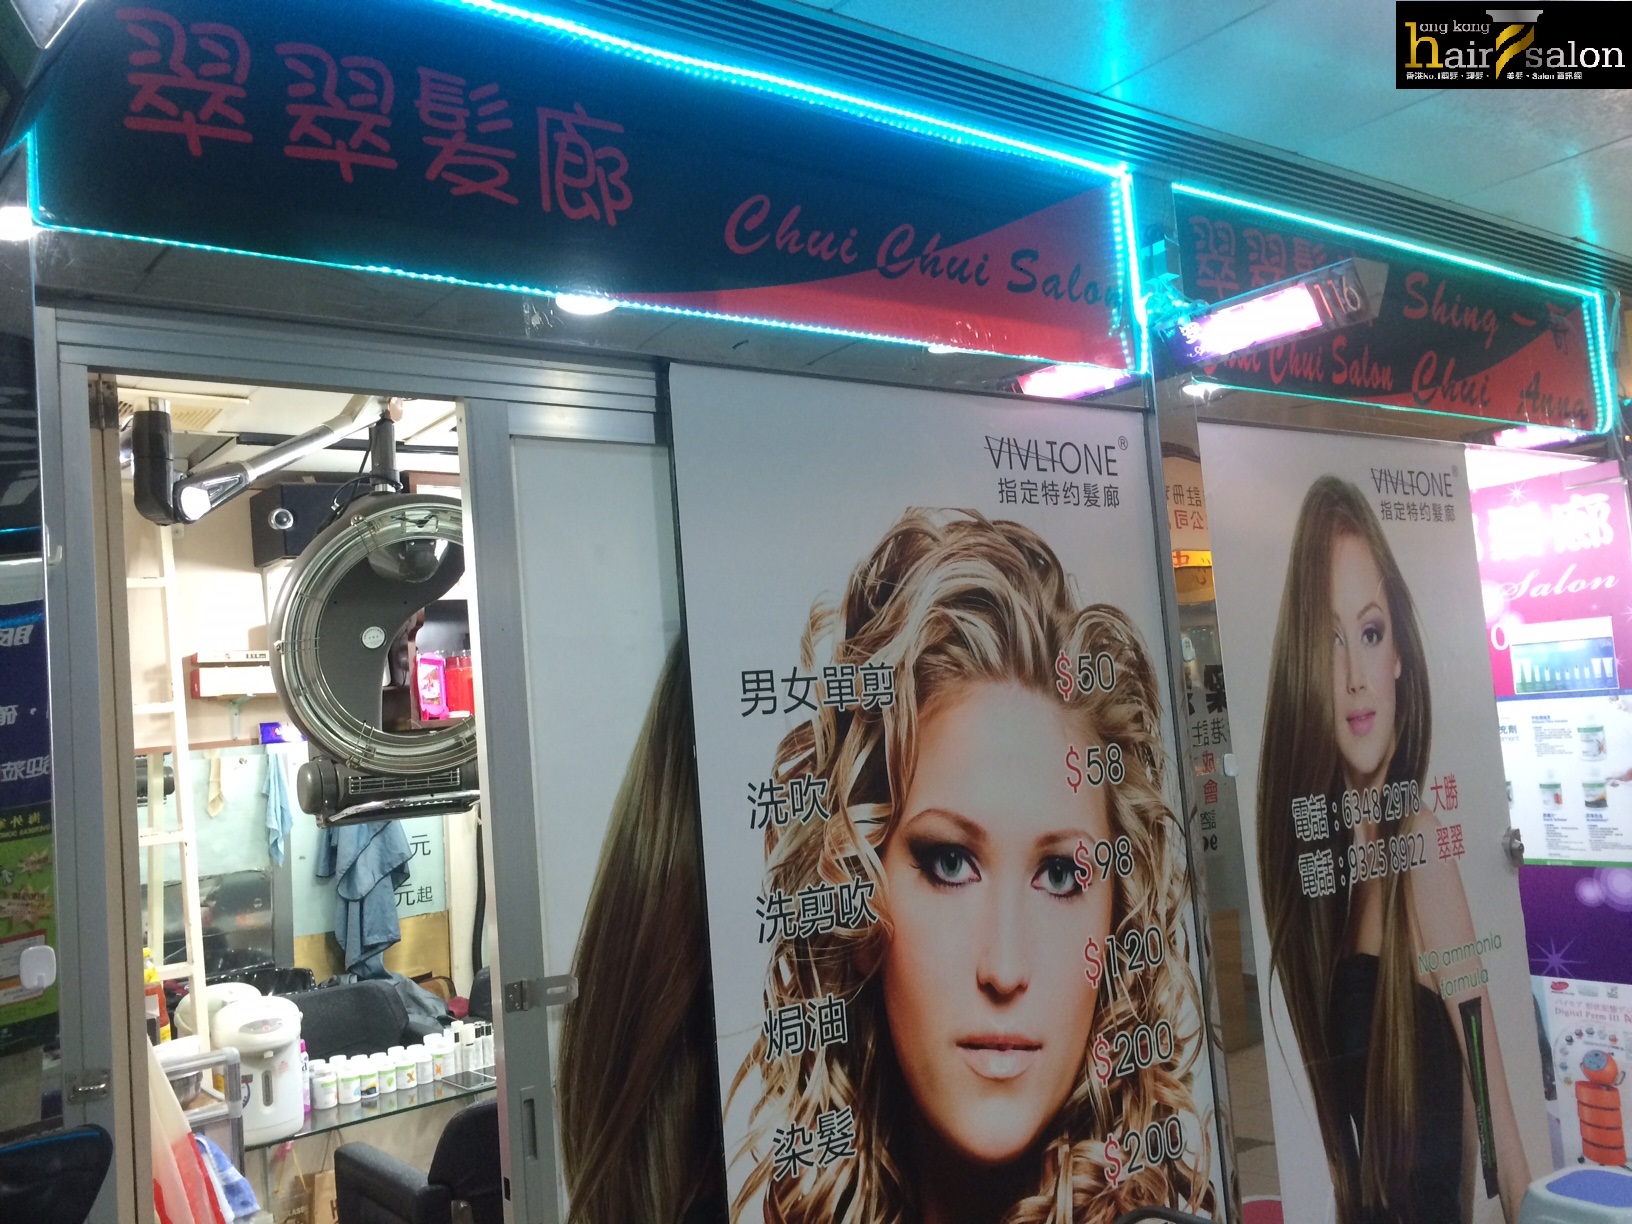 髮型屋: 翠翠髮廊 Chui Chui Salon